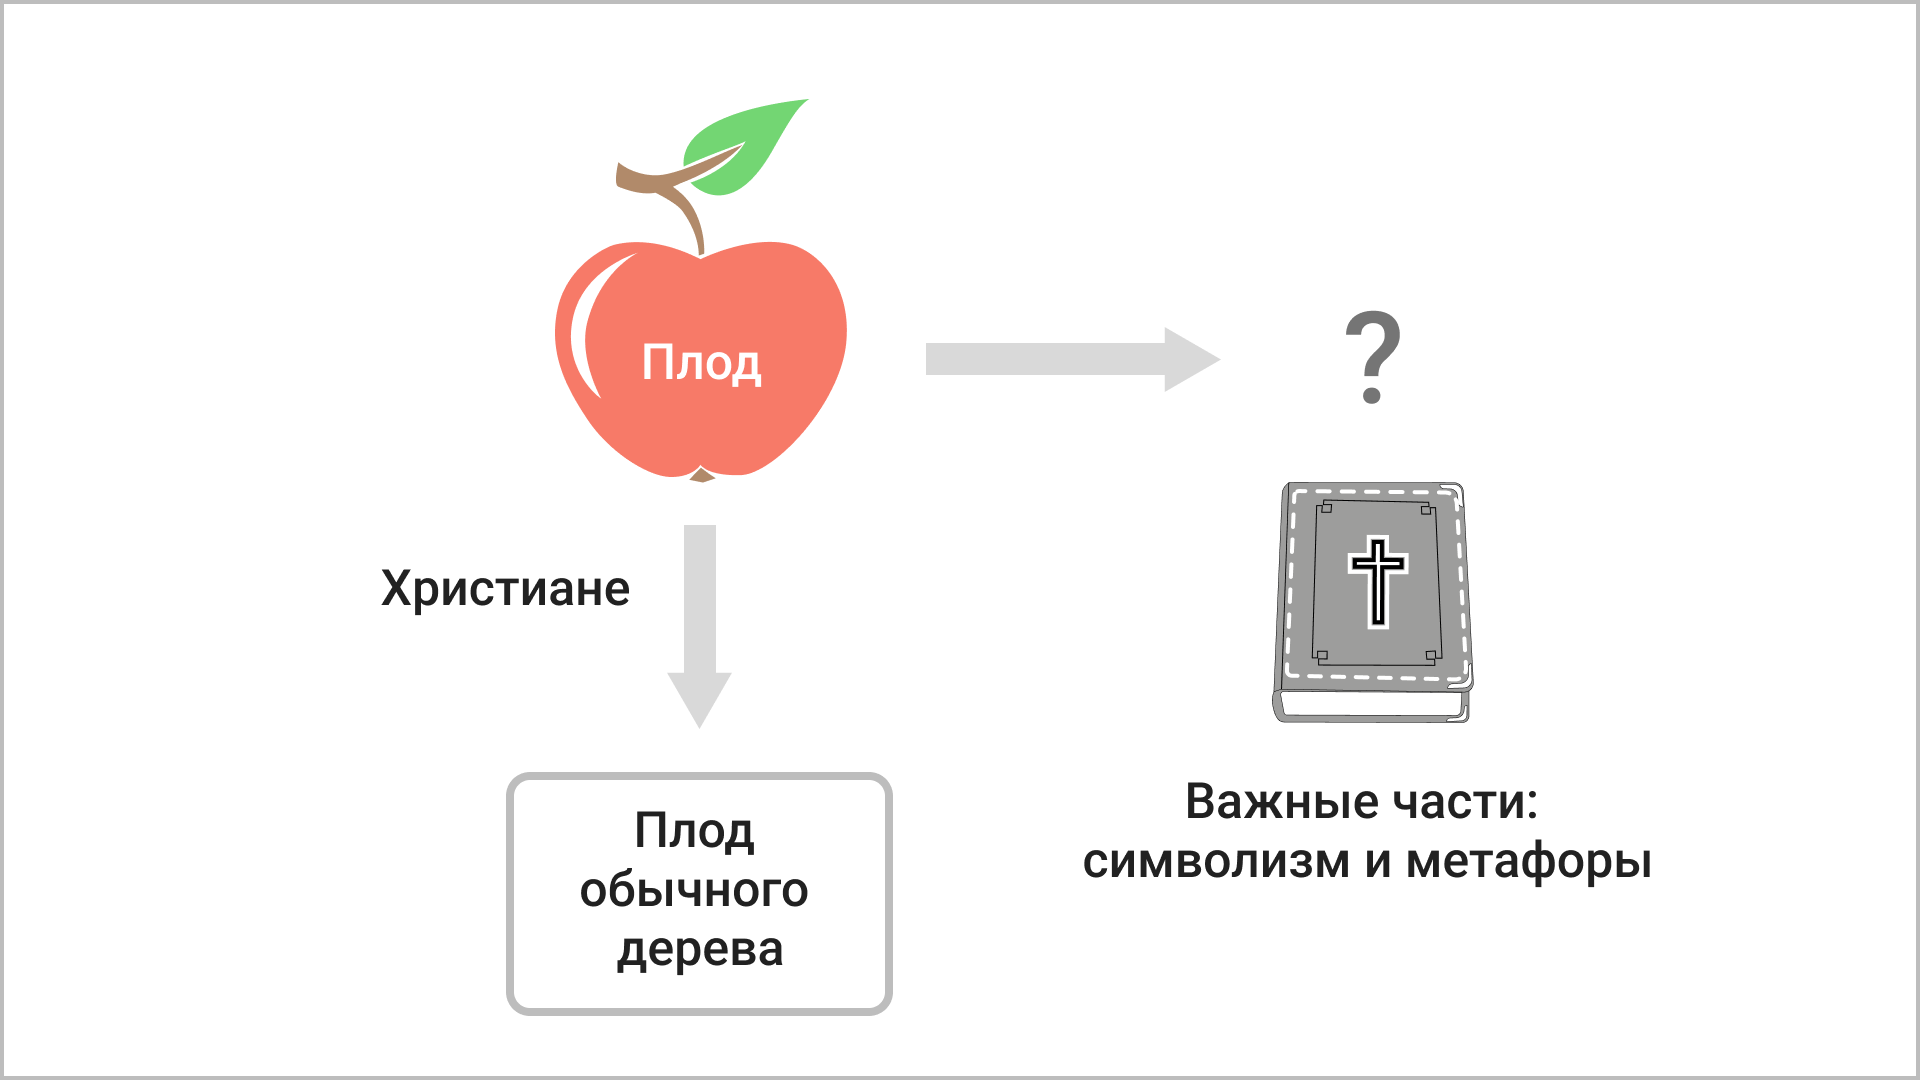 Что символизирует плод?